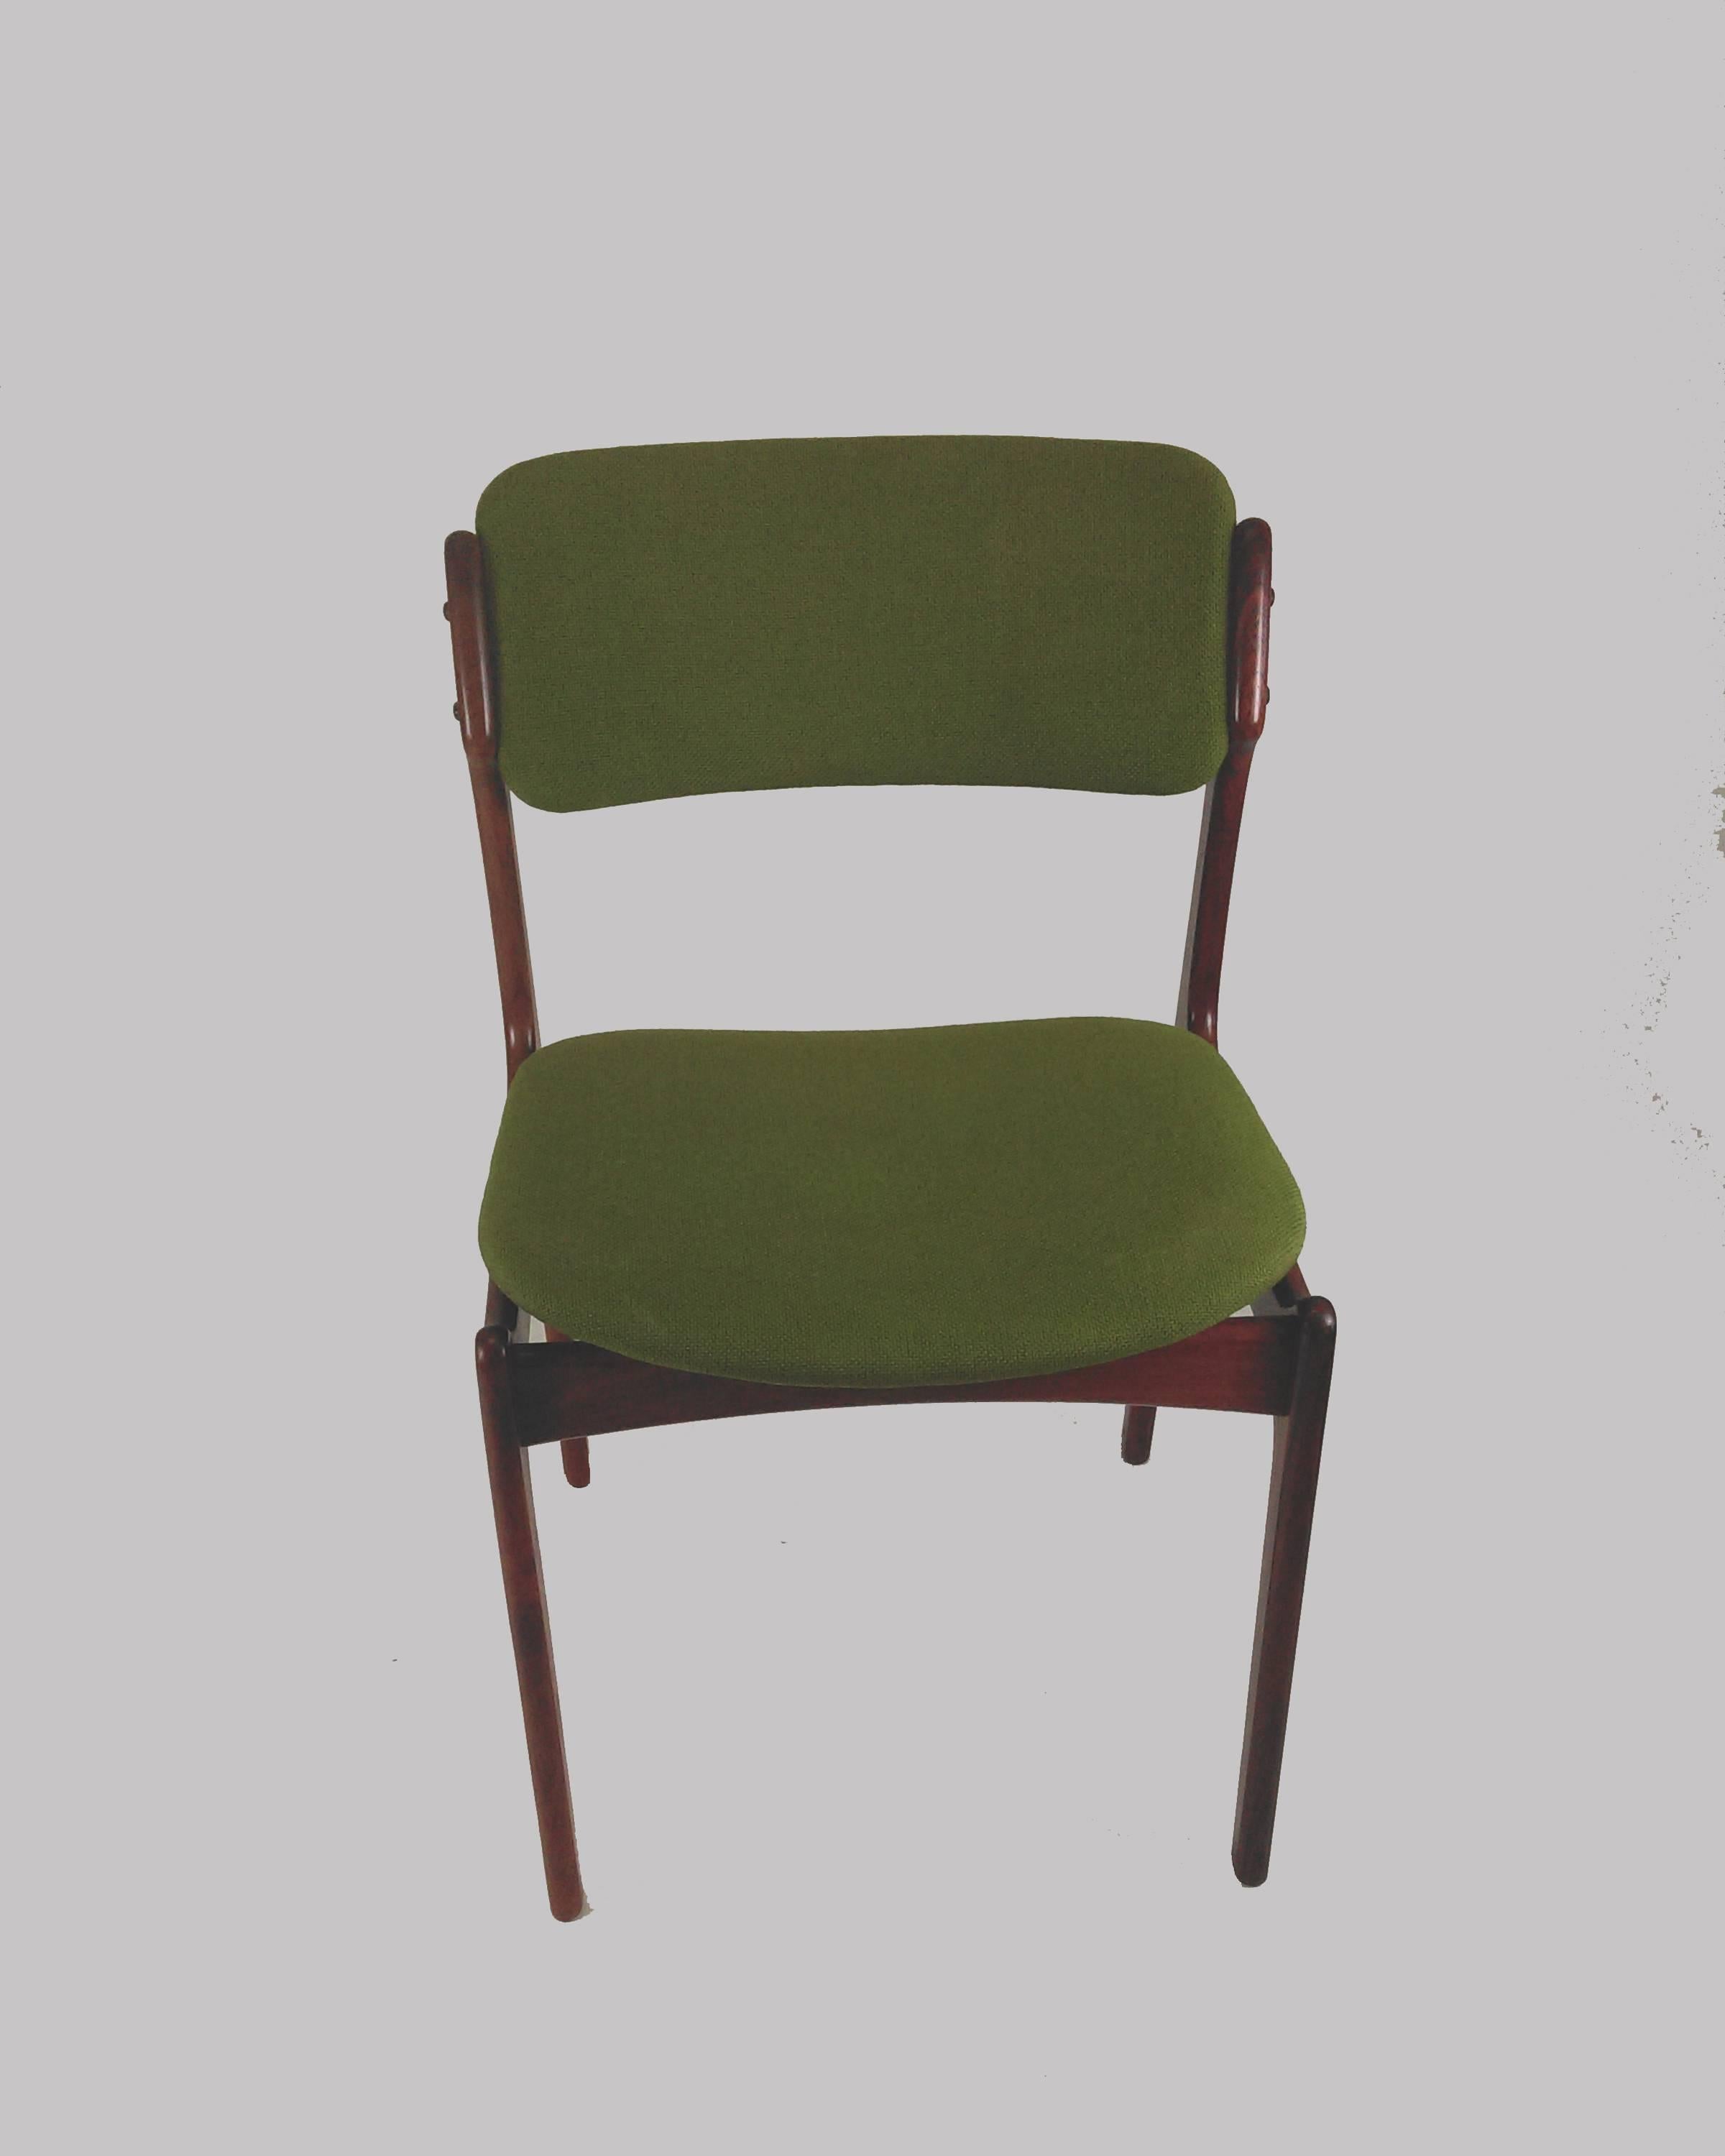 Ensemble de huit exemplaires entièrement restaurés et  chaises de salle à manger en bois de rose avec assise flottante, conçues par Erik Buch pour Oddense Maskinsnedkeri, années 1960

Les chaises ont une construction simple et attrayante qui devient